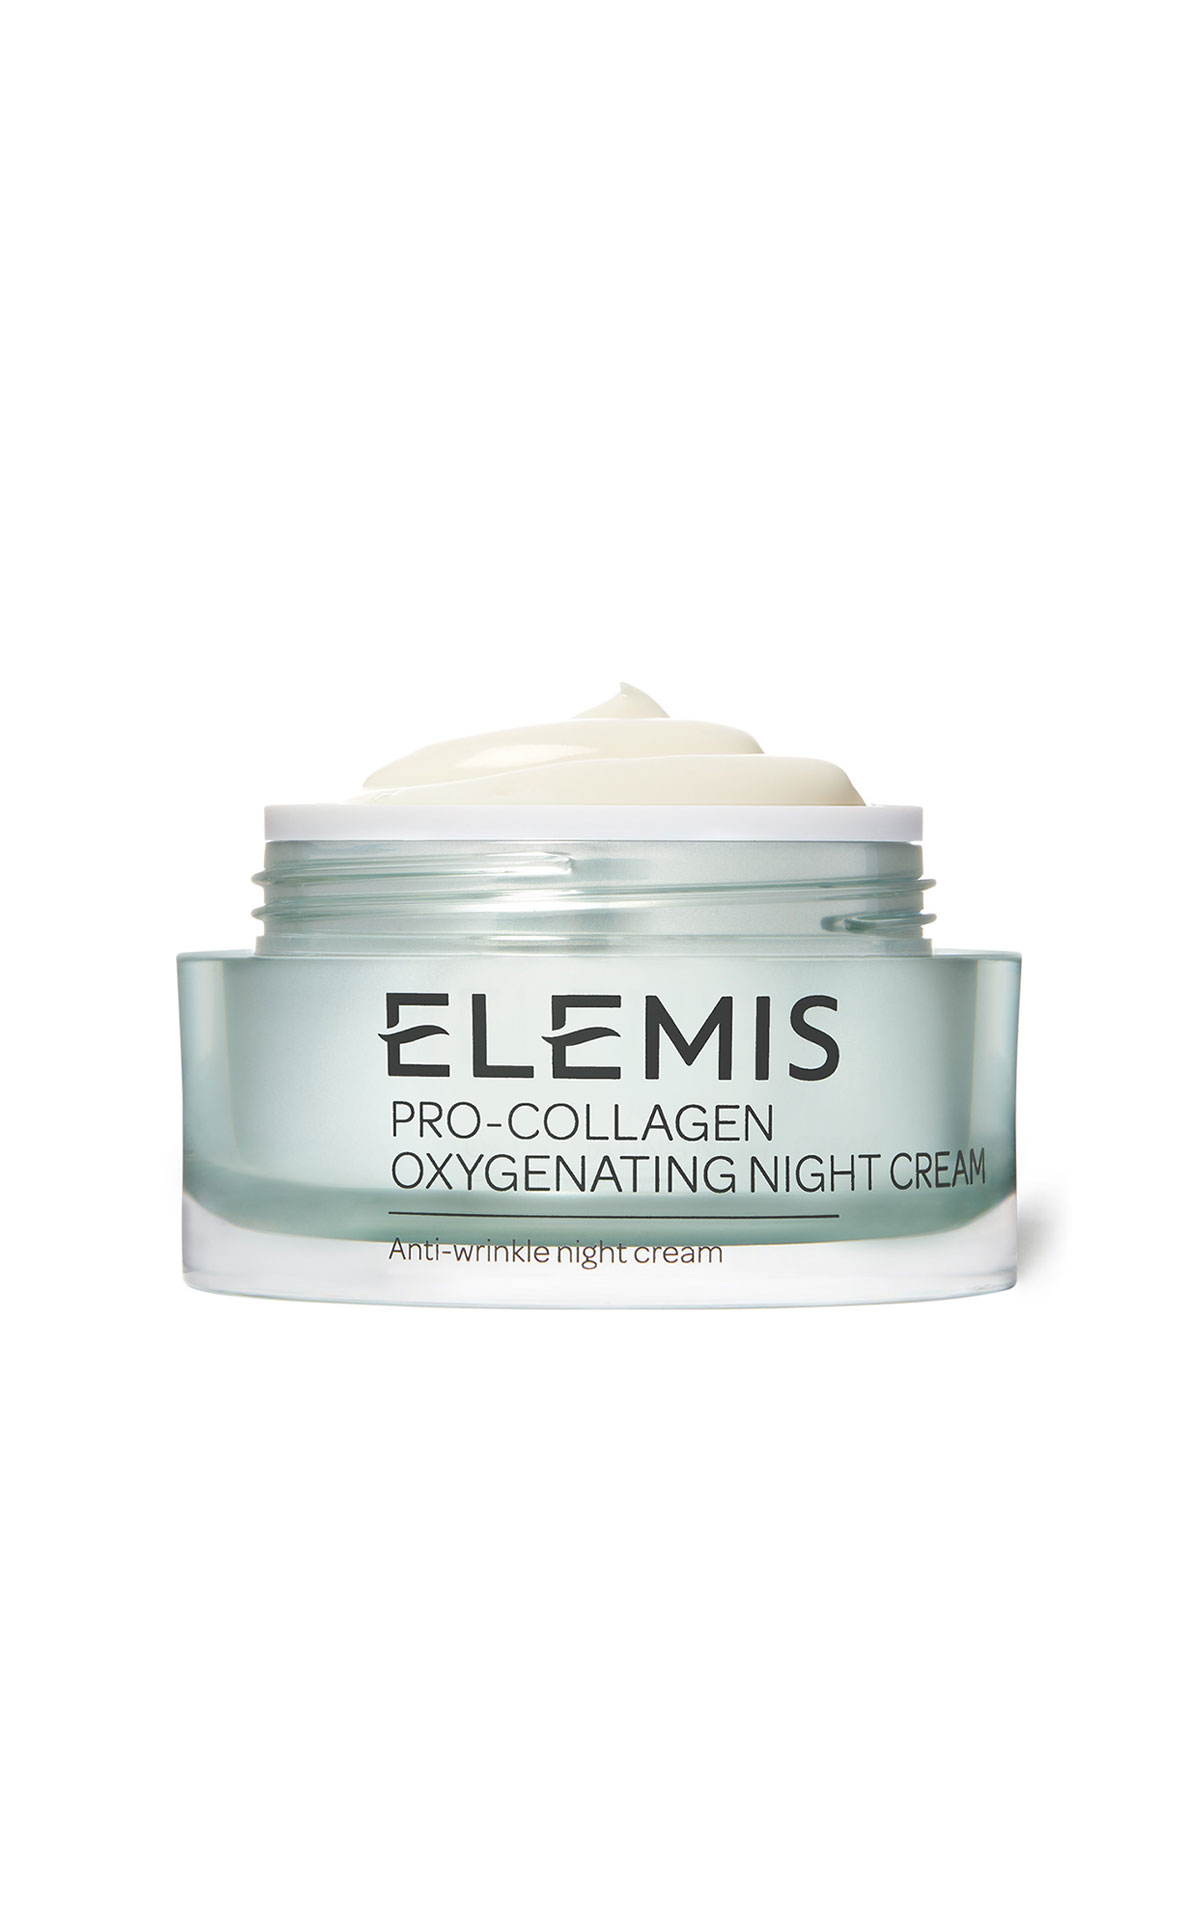 ELEMIS Pro-collagen oxygenation night cream 50ml from Bicester Village